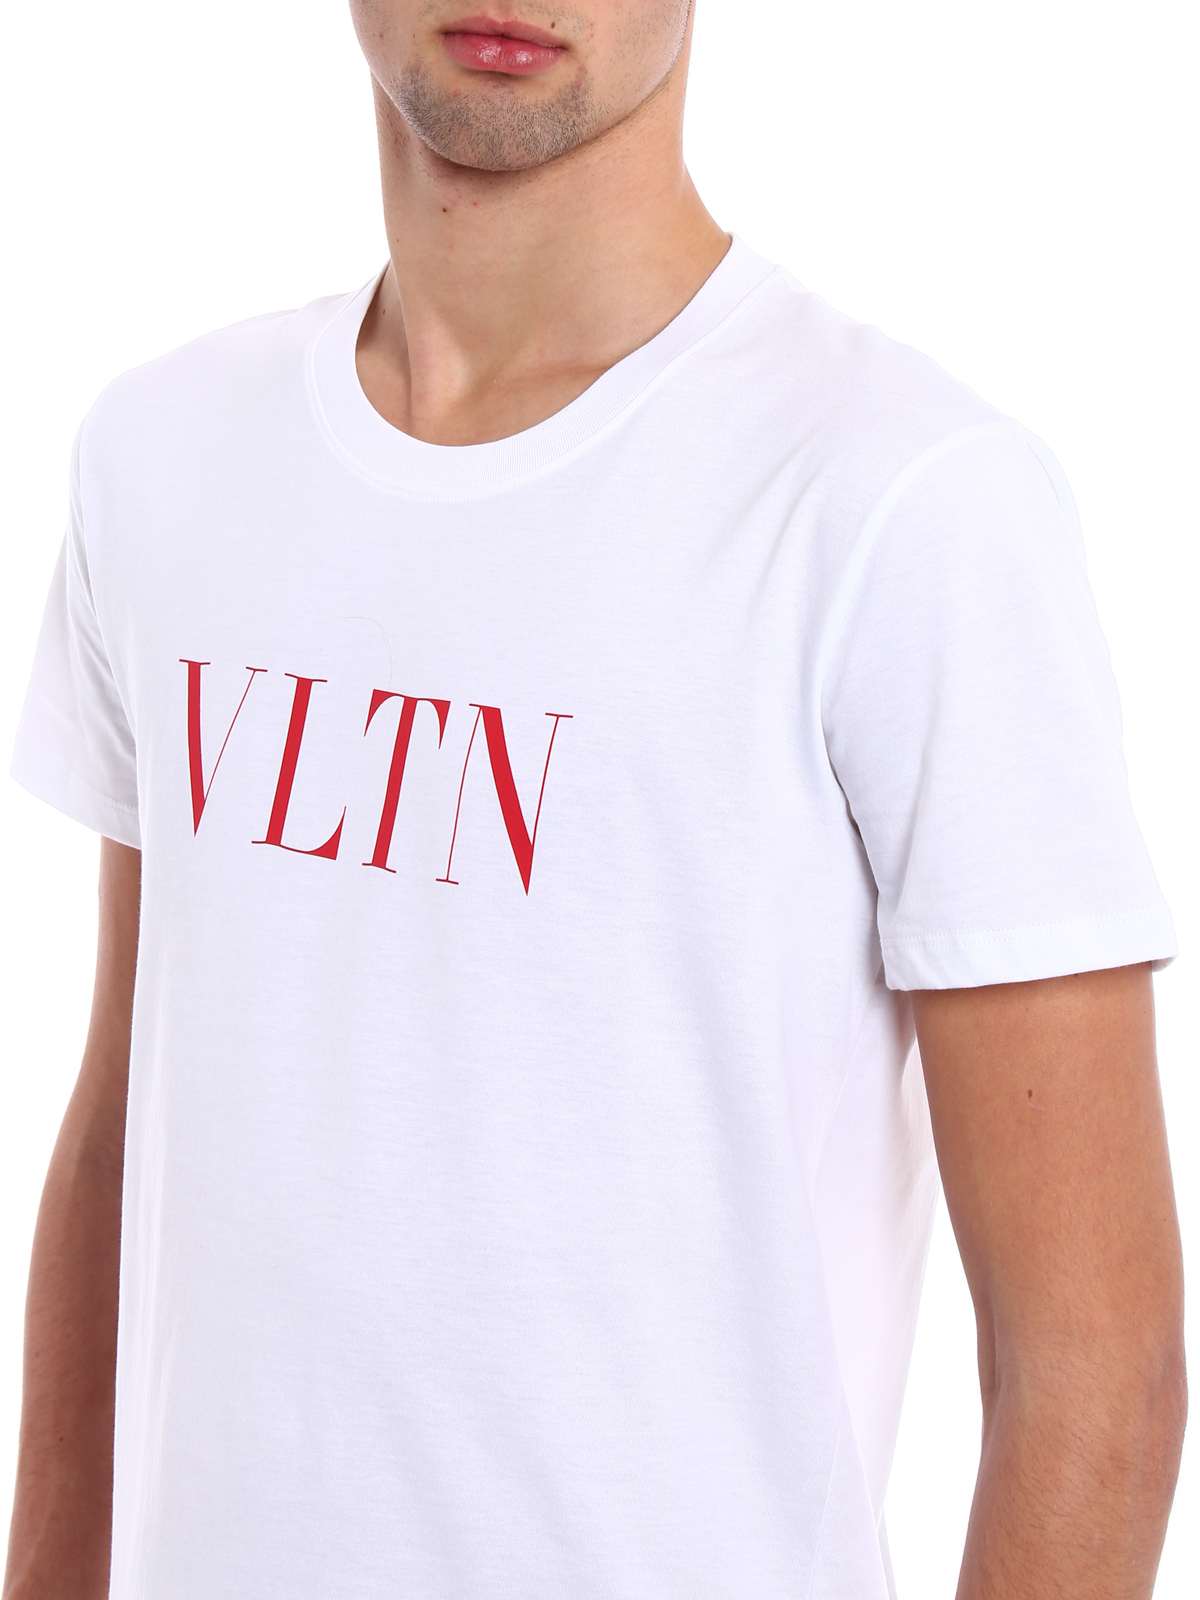 Valentino Shirt Vltn Shop, 56% OFF | www.pegasusaerogroup.com